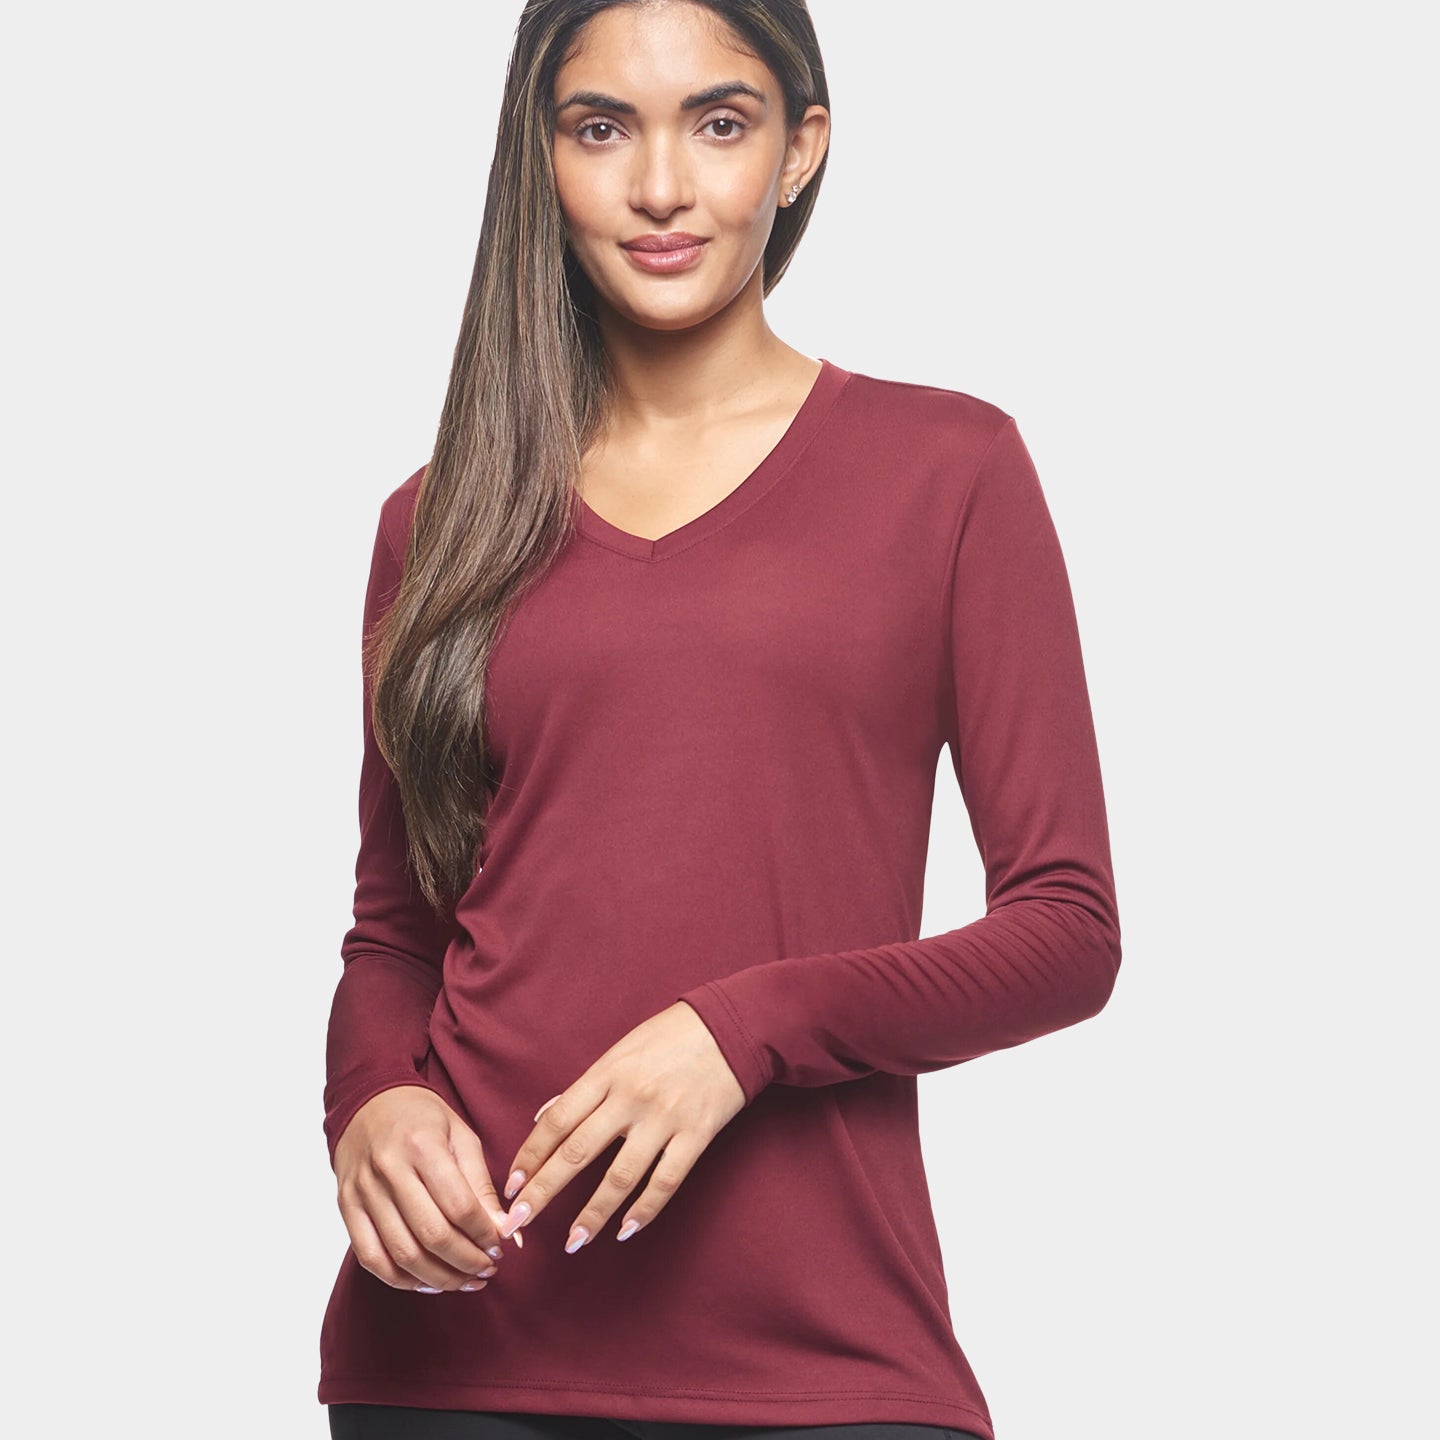 Expert Brand DriMax Women's Performance V-Neck Long Sleeve Shirt, XL, Cardinal A1